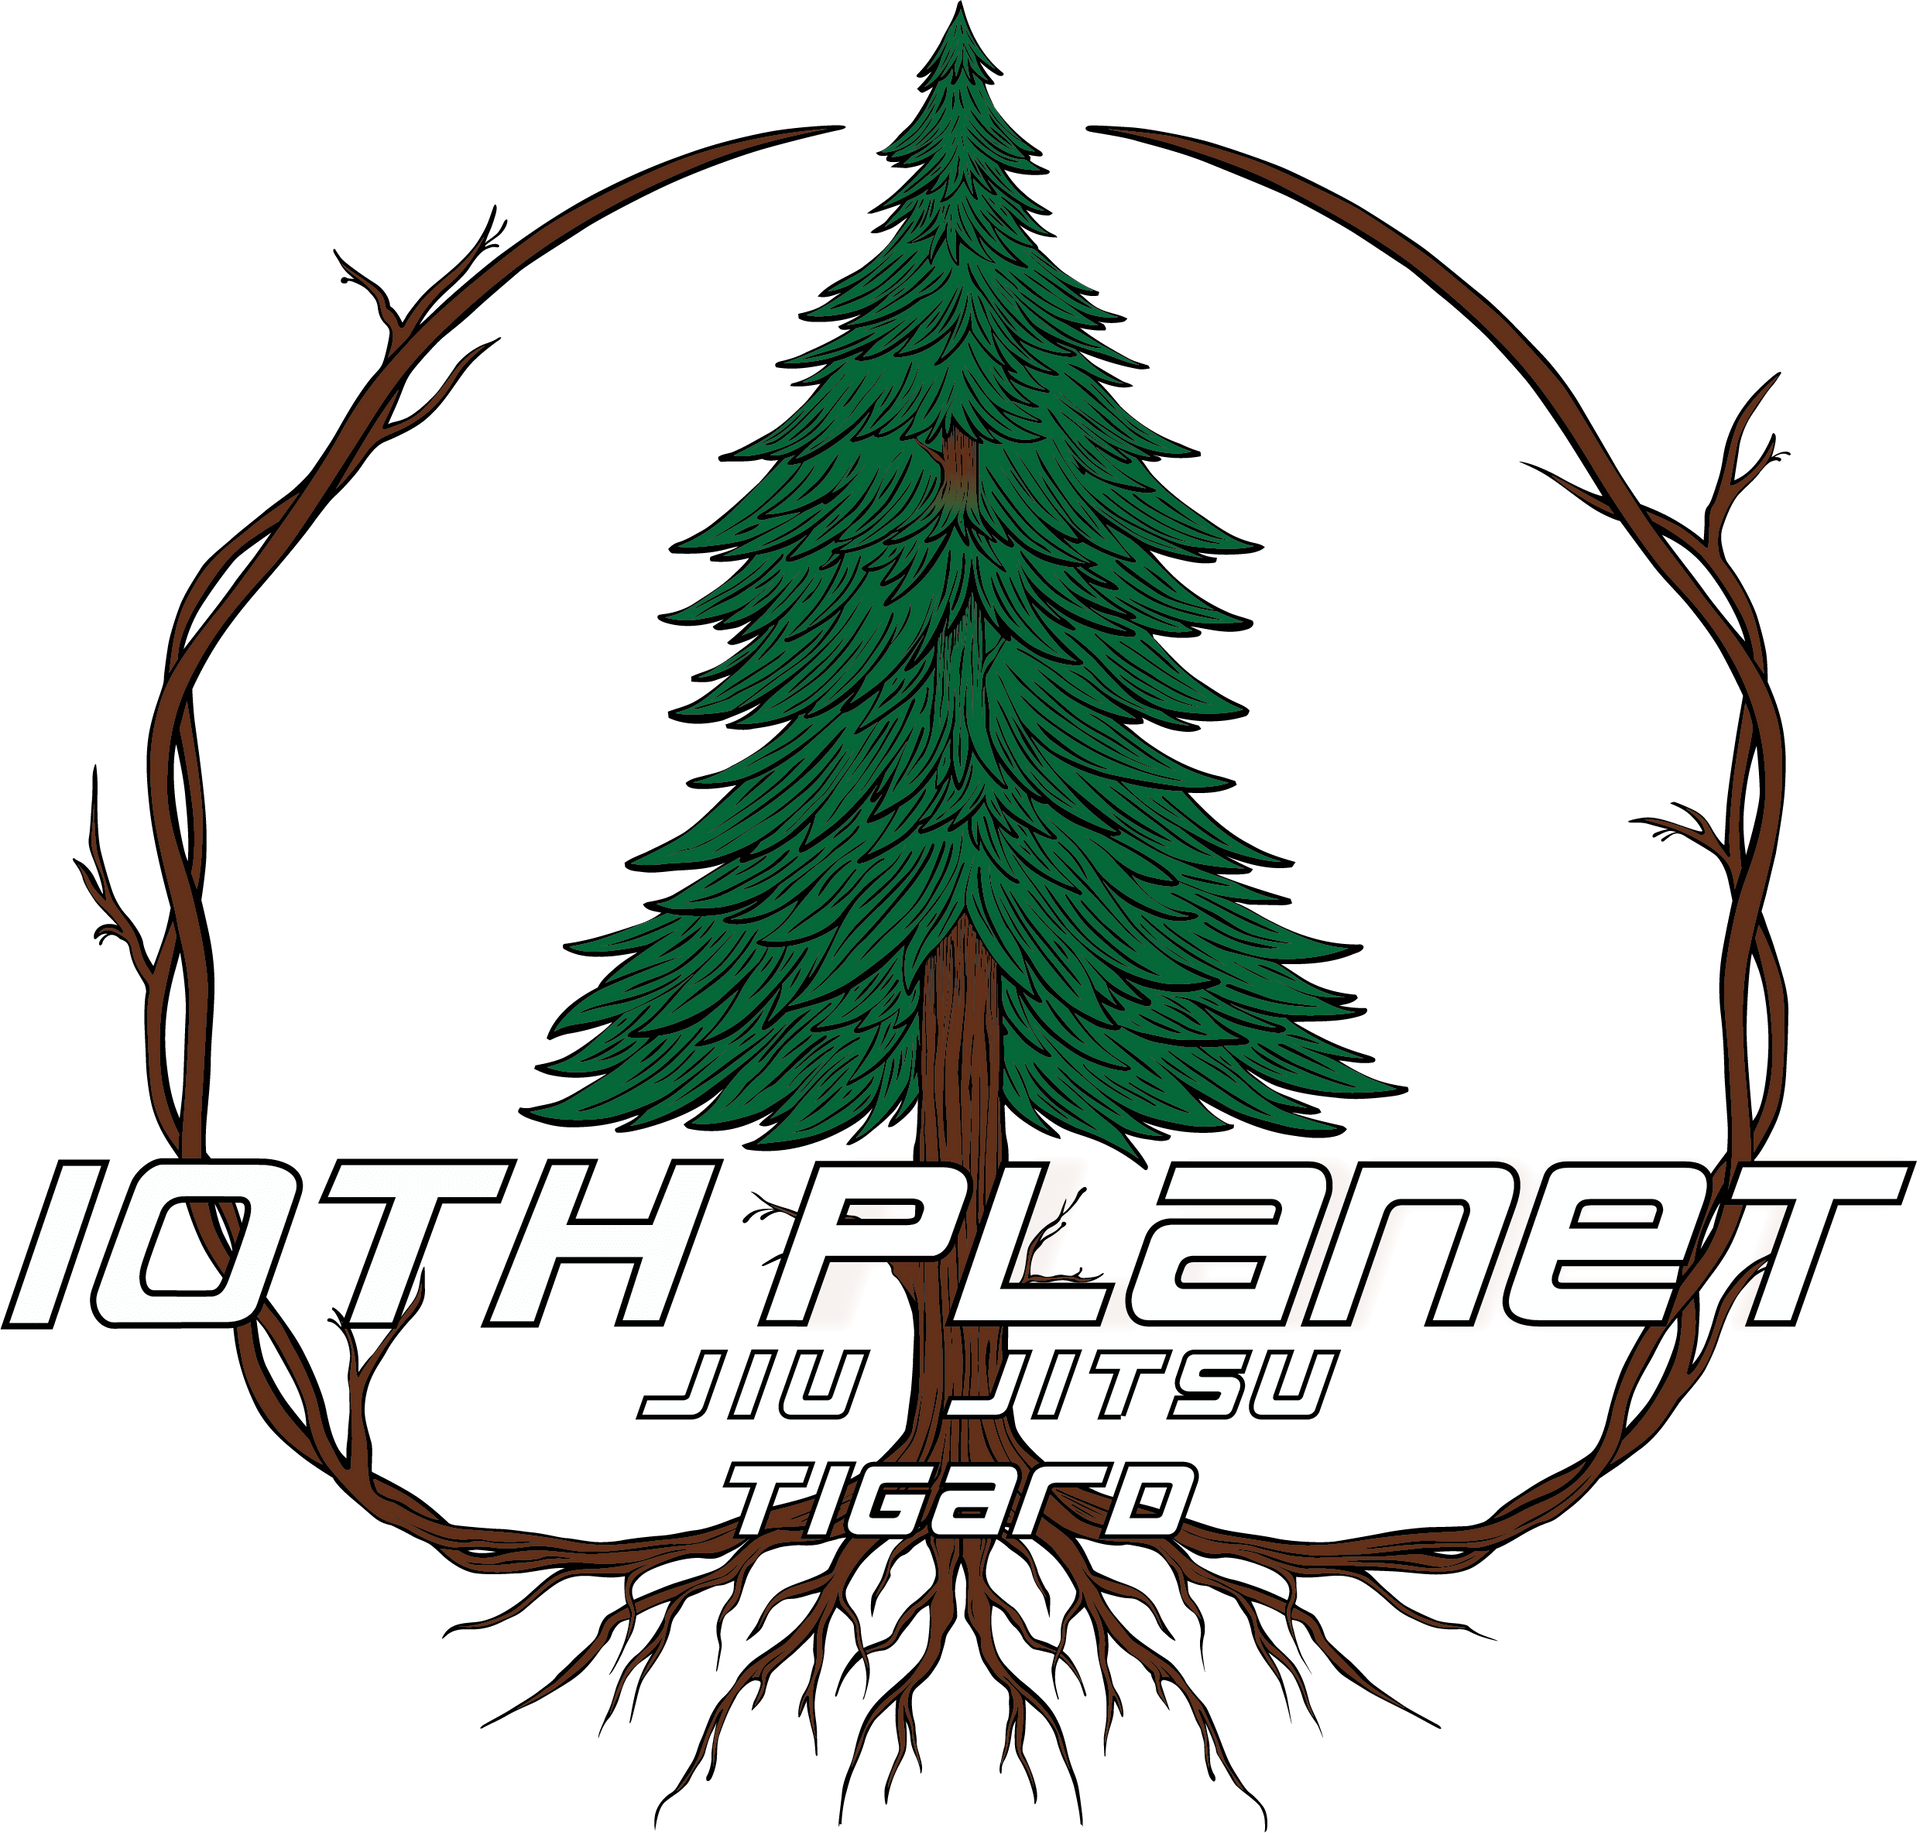 10th Planet - Tigard, OR Jiu-Jitsu